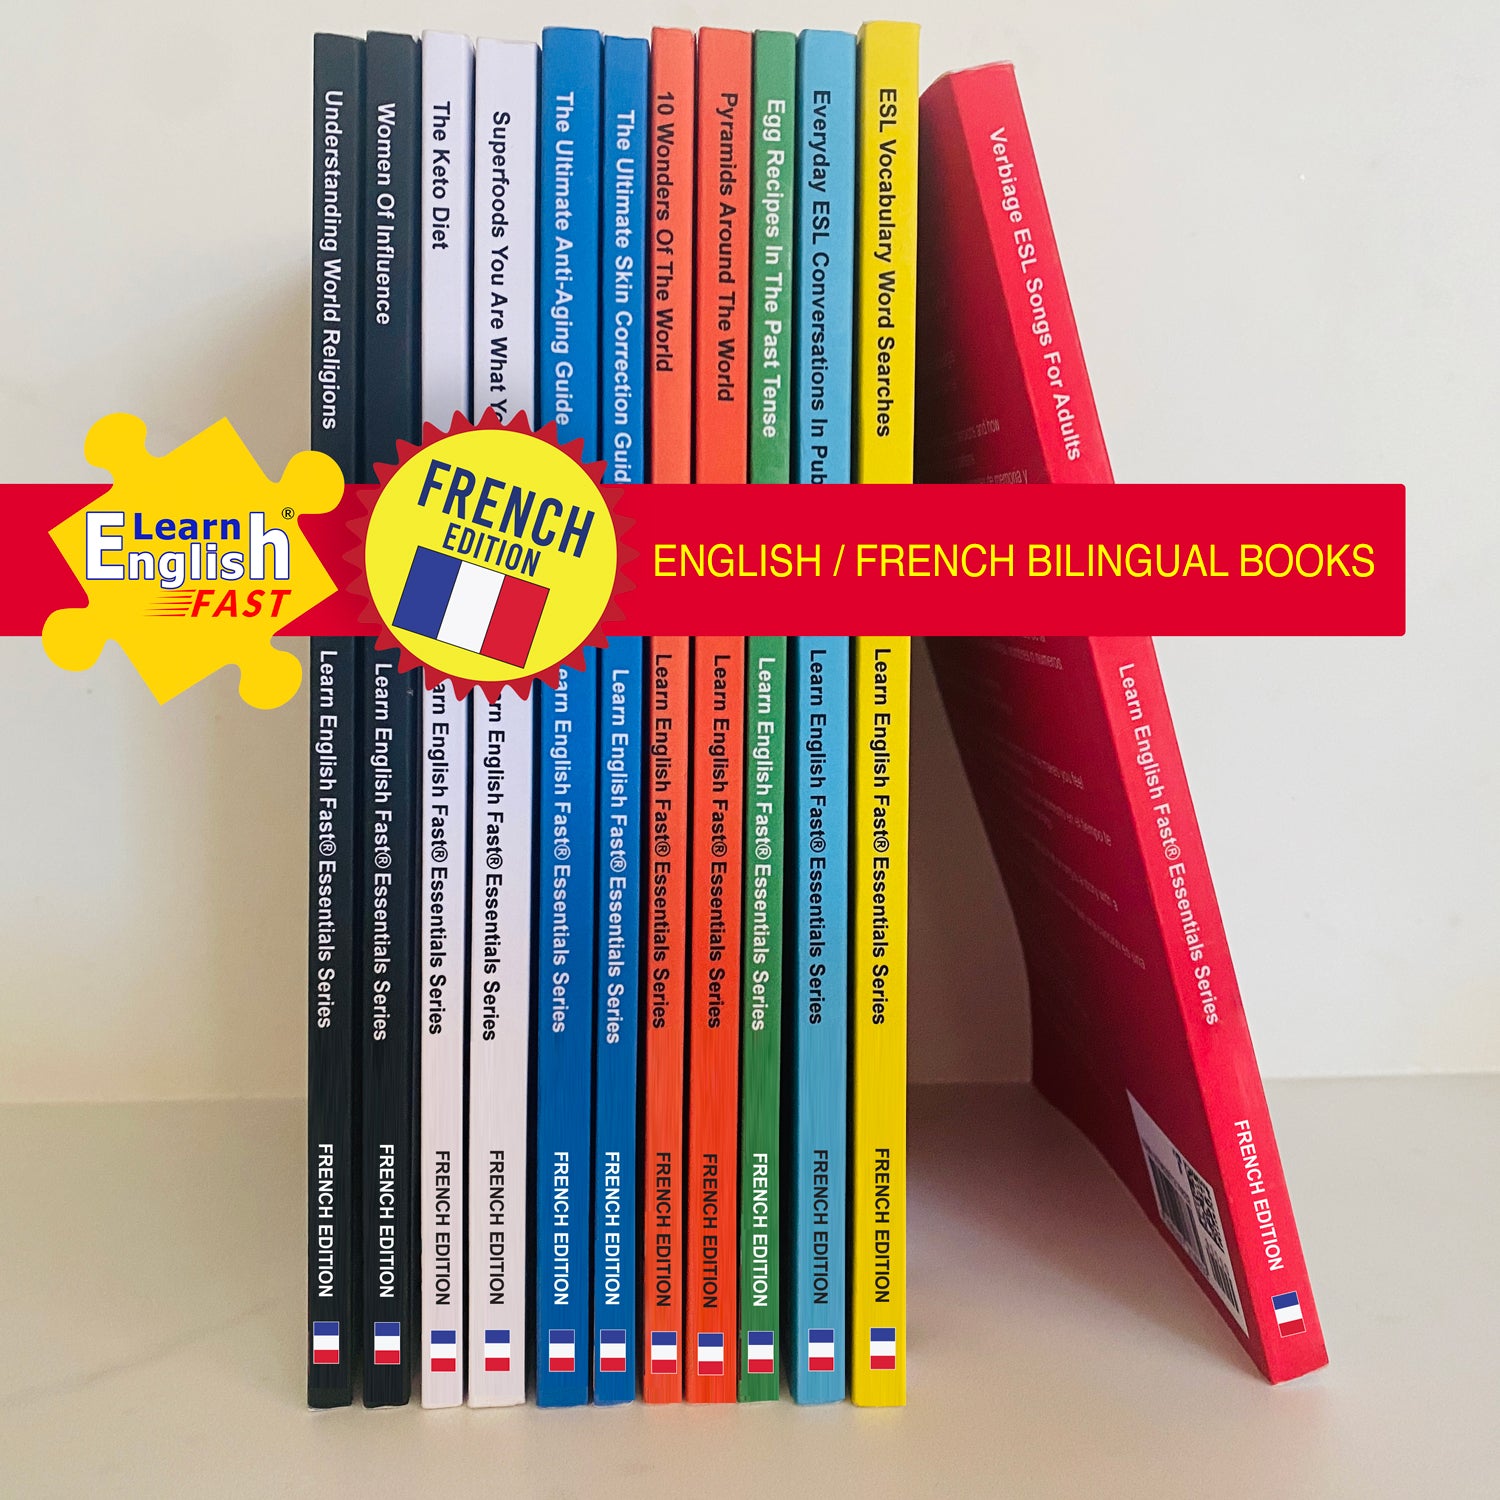 Livres bilingues (e-books) anglais français